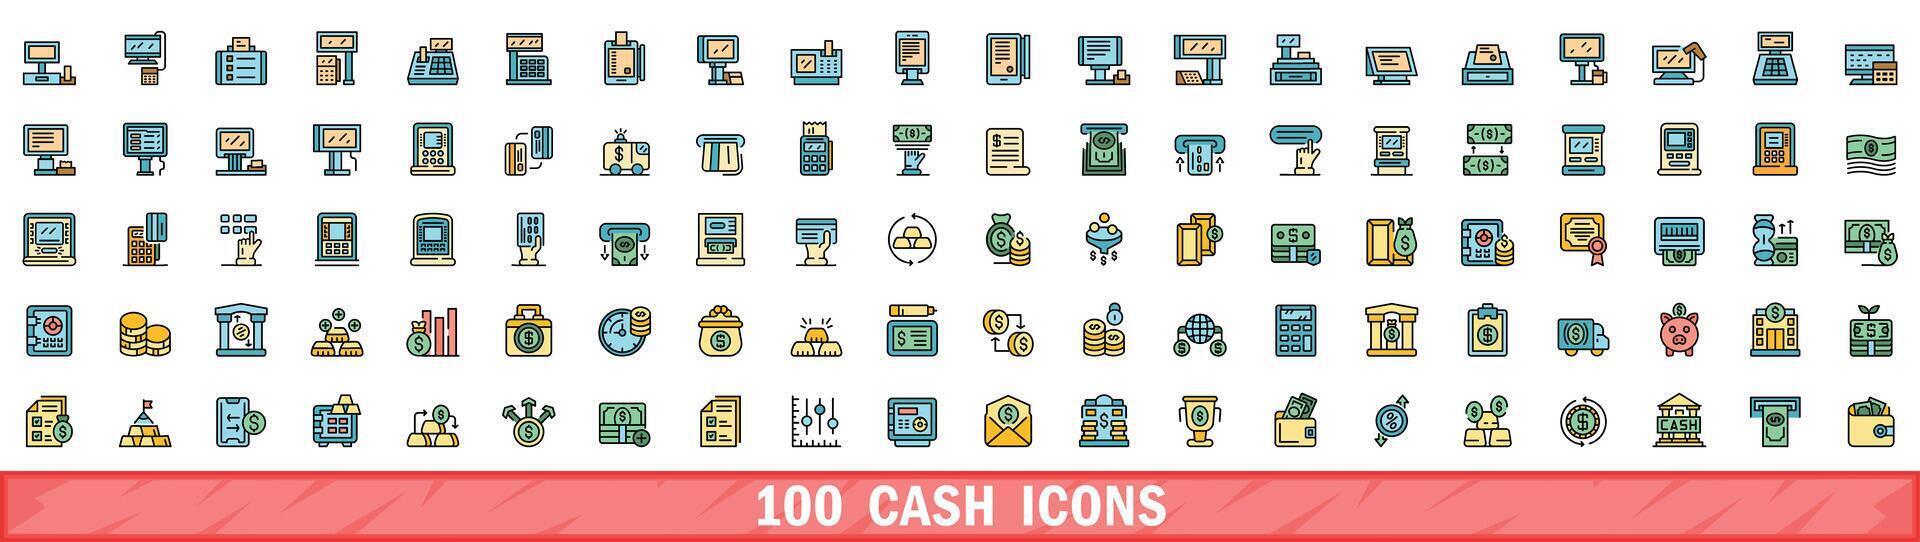 100 cash icons set, color line style vector